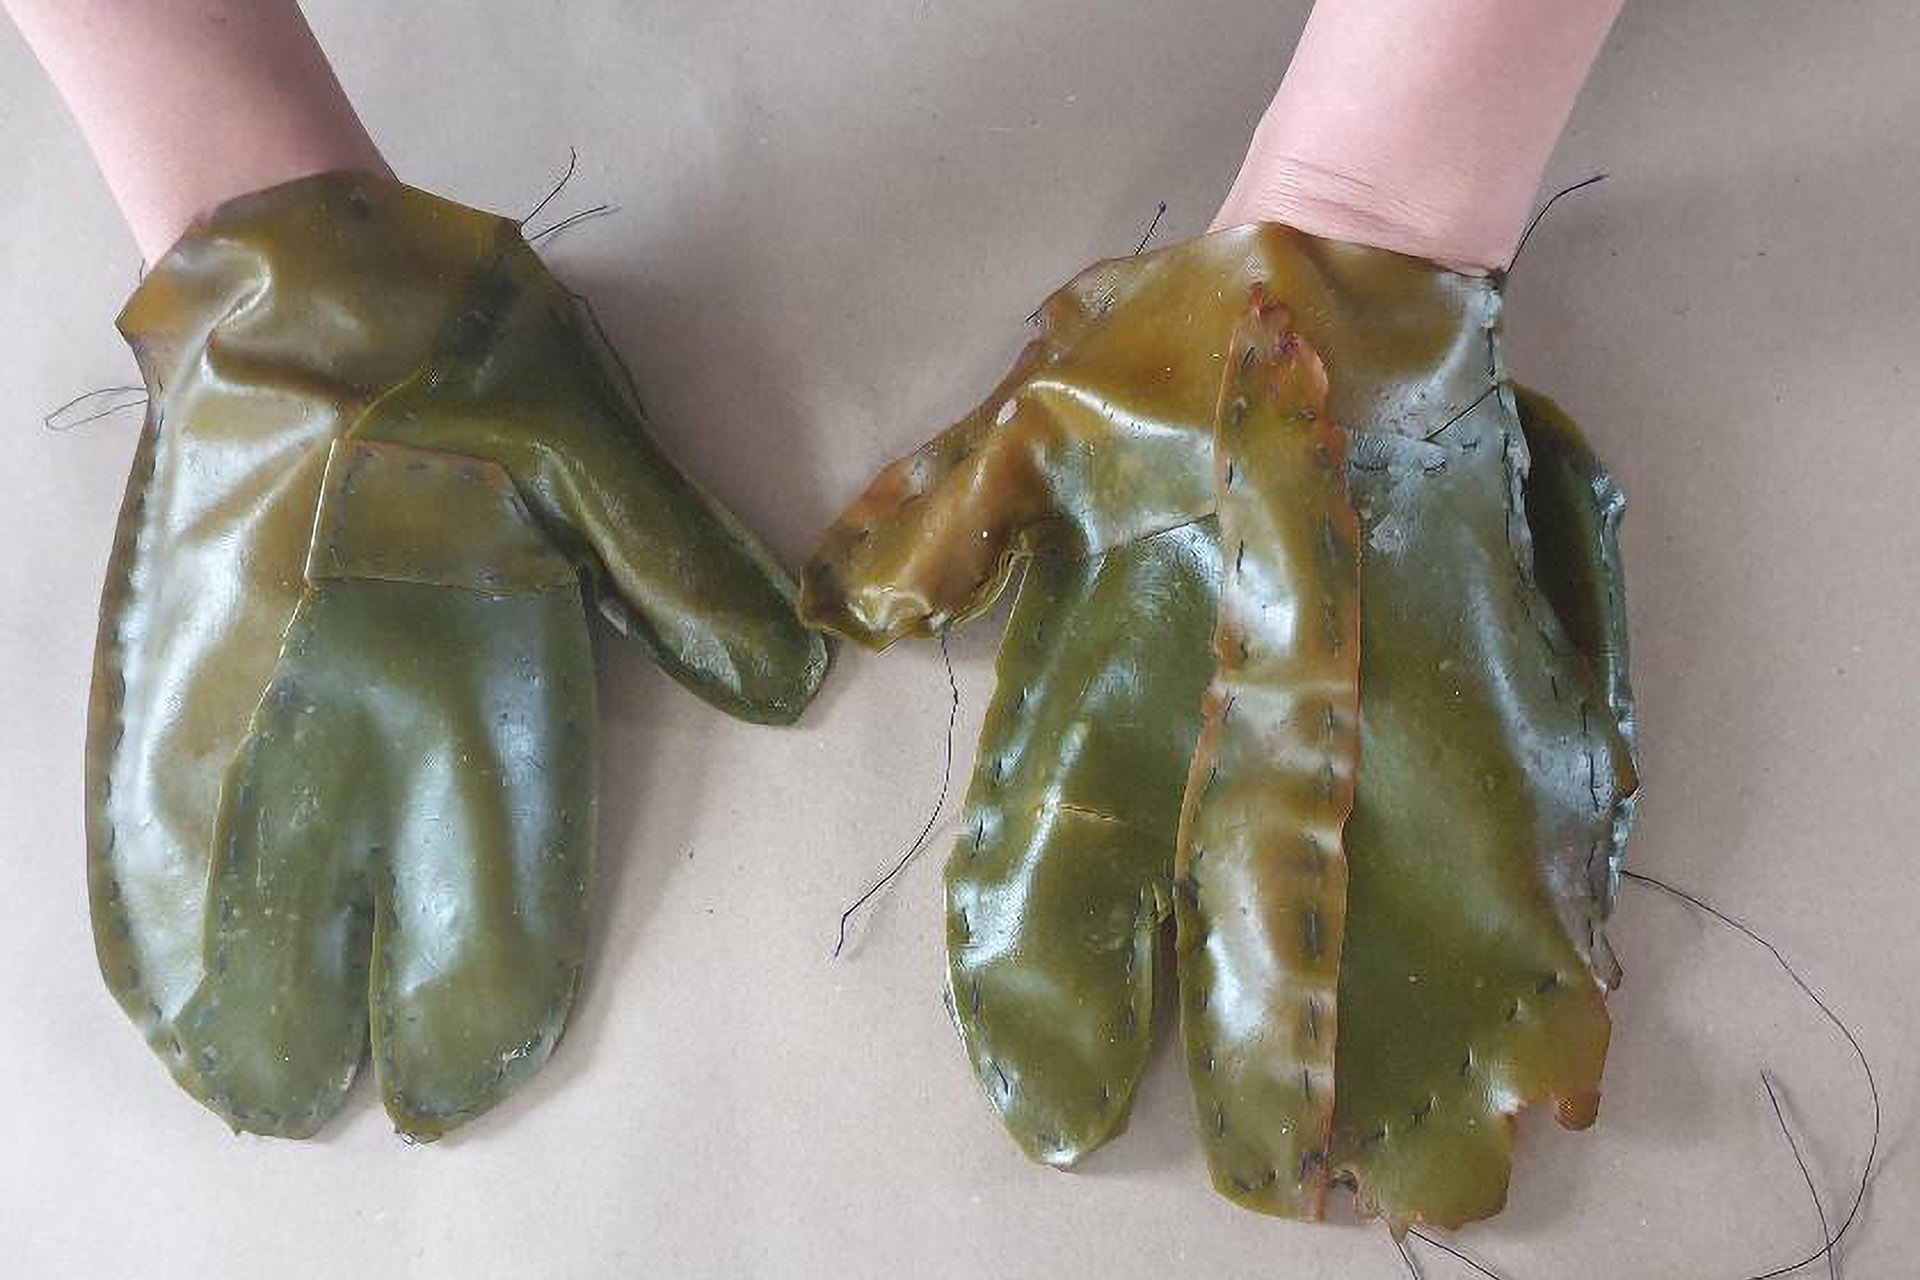 kelp gloves by Finnish artist Tiina Arjukka Hirvonen